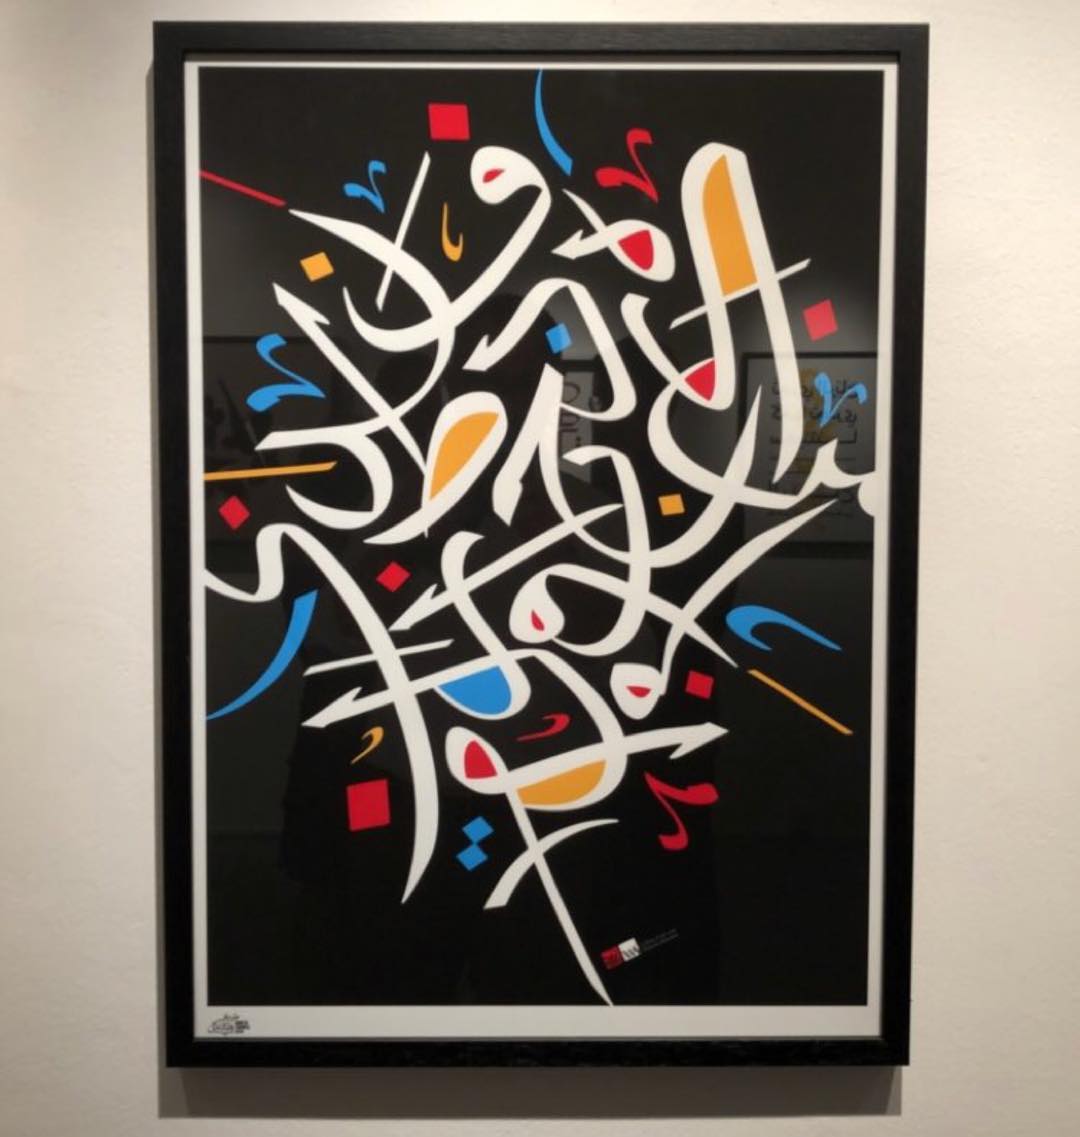 Download Kaligrafi Karya Kaligrafer Kristen My poster design for the made in Tashkeel exhibition at @tashkeelstudio #poster …-Wissam